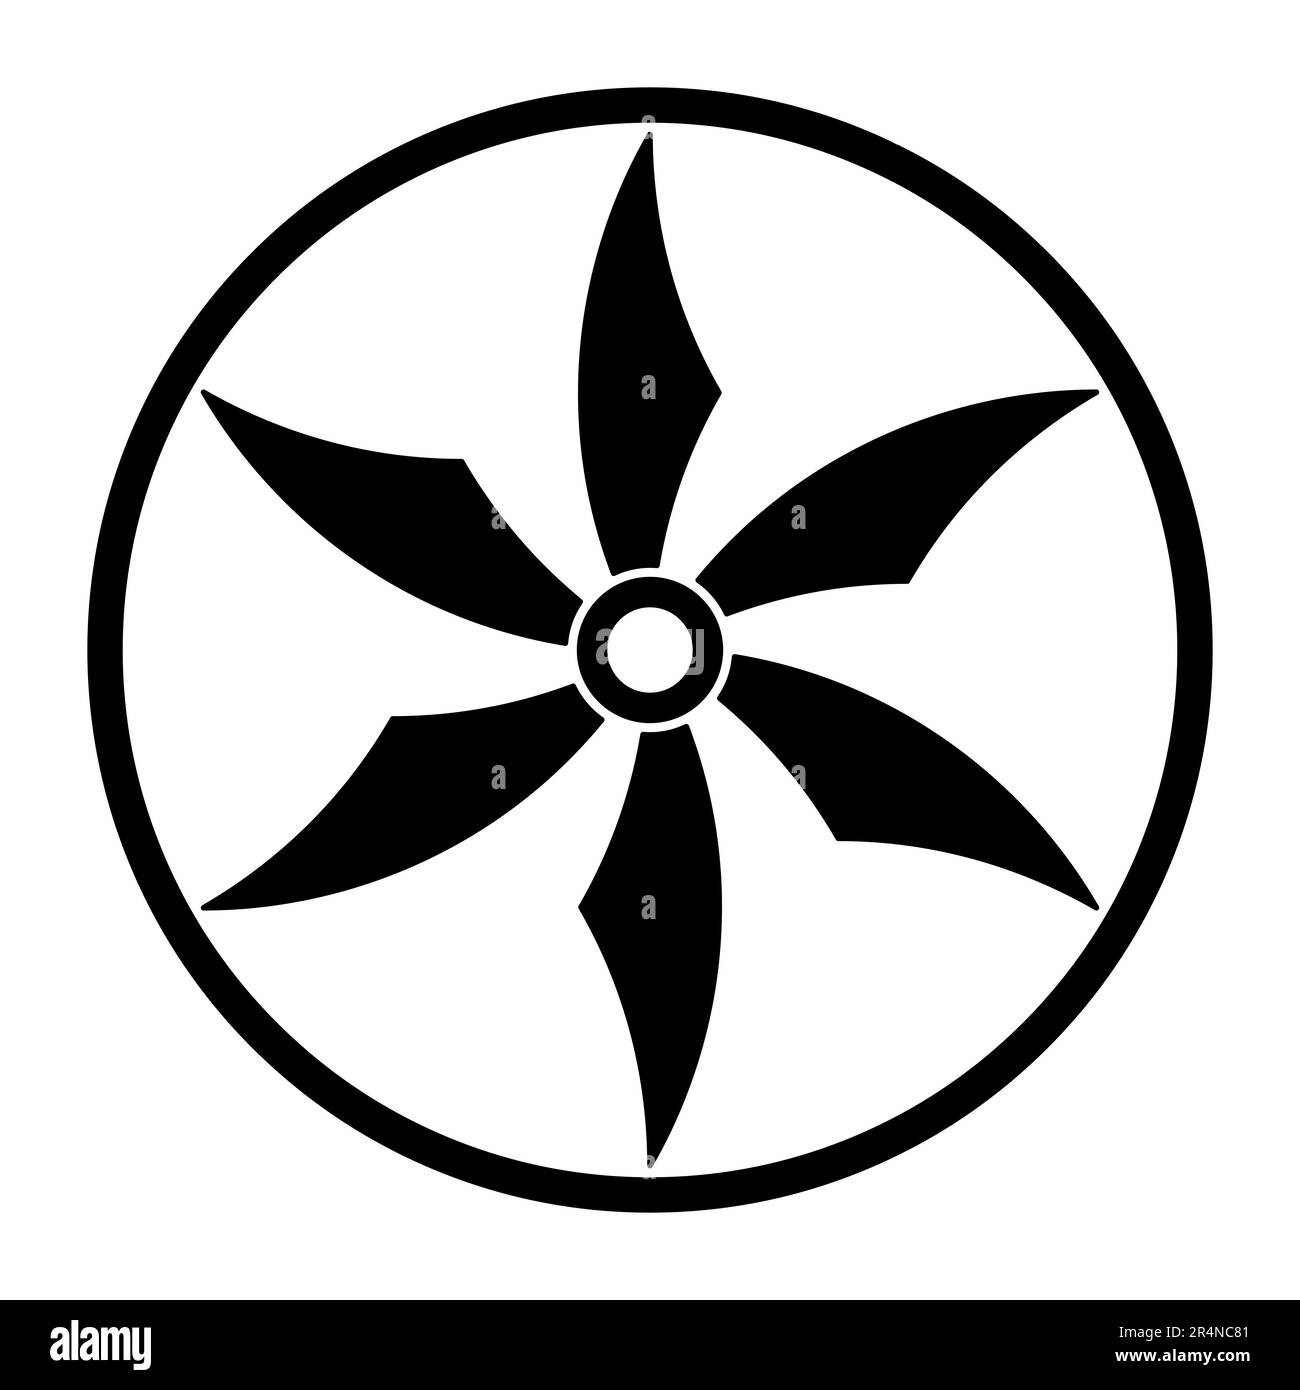 Étoile à six pointes en cercle, un symbole semblable à une roue shuriken, une arme cachée japonaise, également connue sous le nom de lancer ou ninja star. Banque D'Images